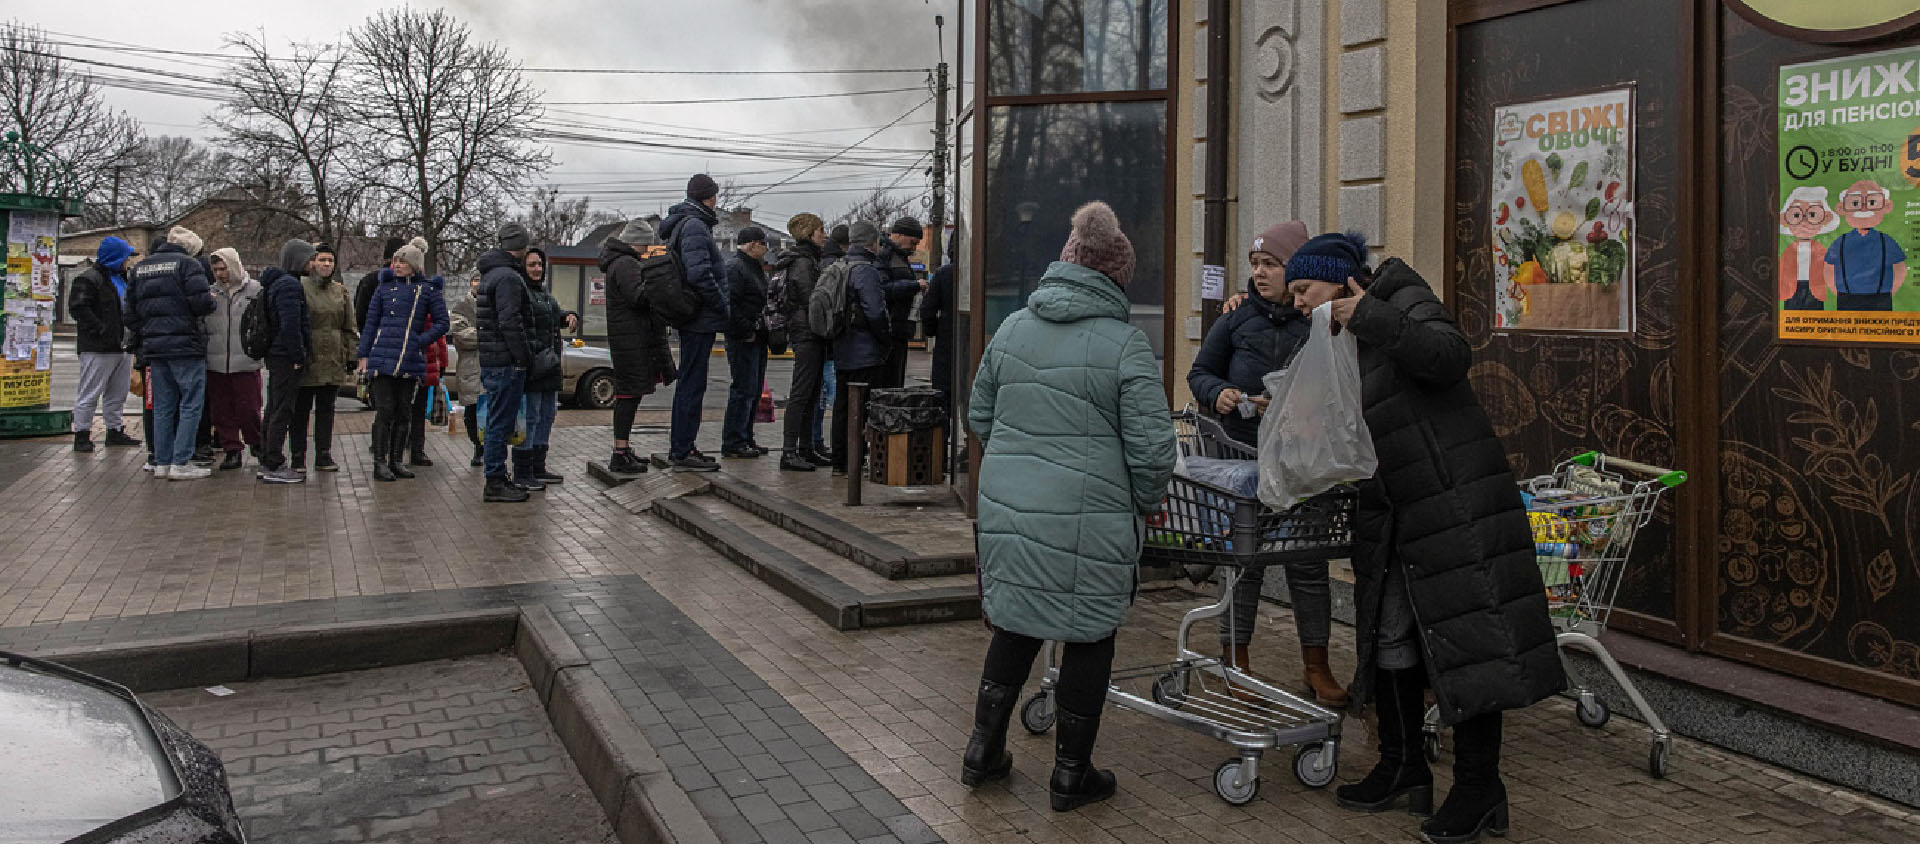 Les queues s'allongent devant les magasins à Kiev | © Keystone/EPA/ROMAN PILIPEY